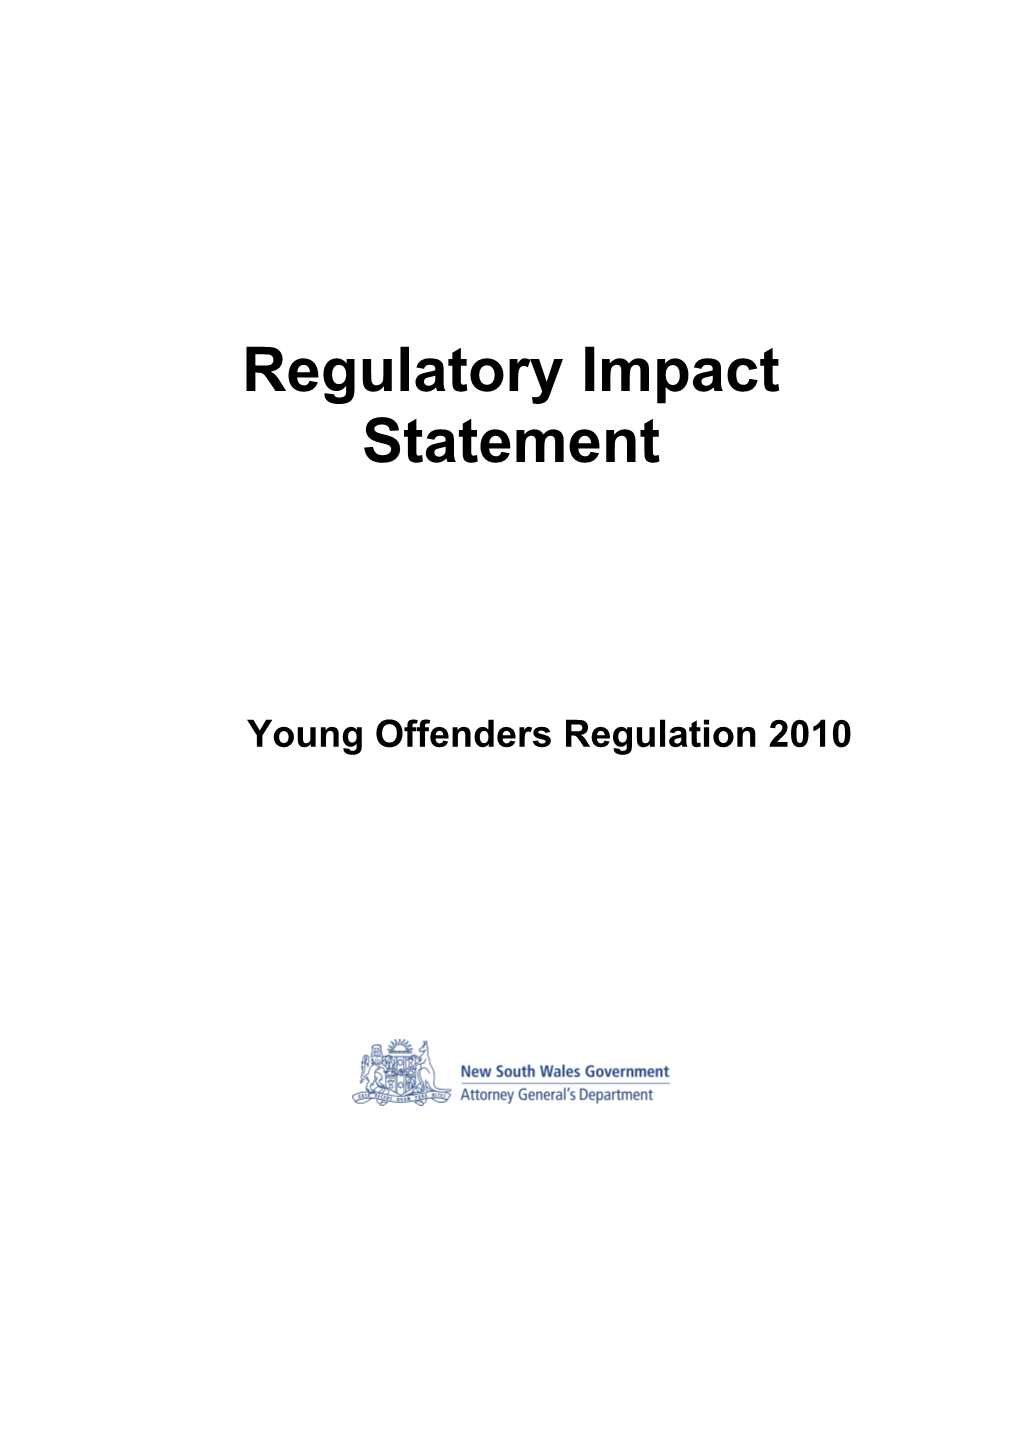 Regulatory Impact Statement s1